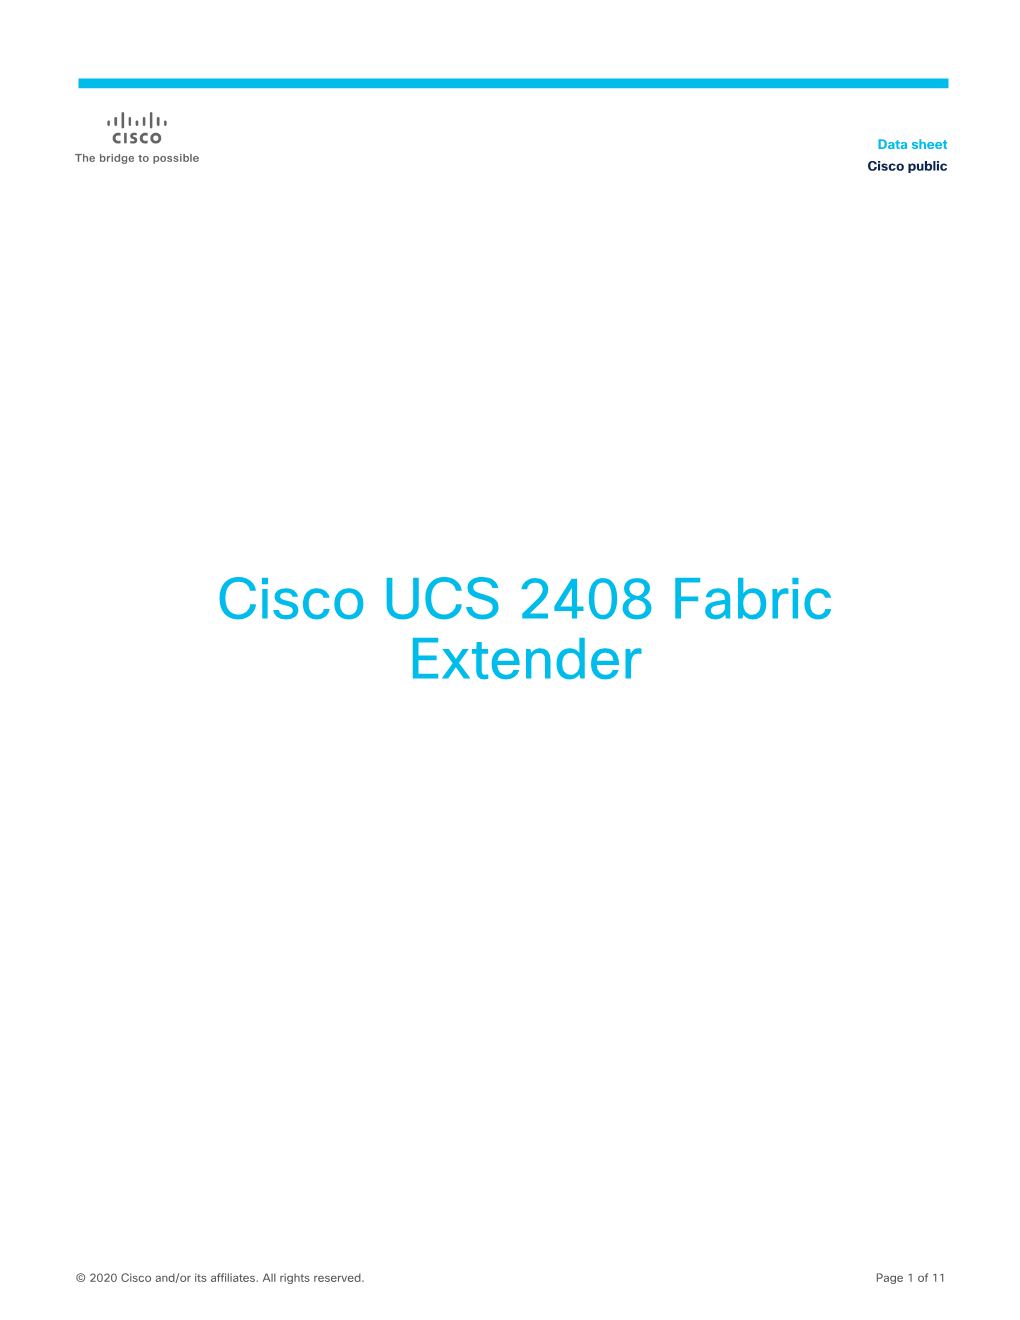 Cisco UCS 2408 Fabric Extender Data Sheet